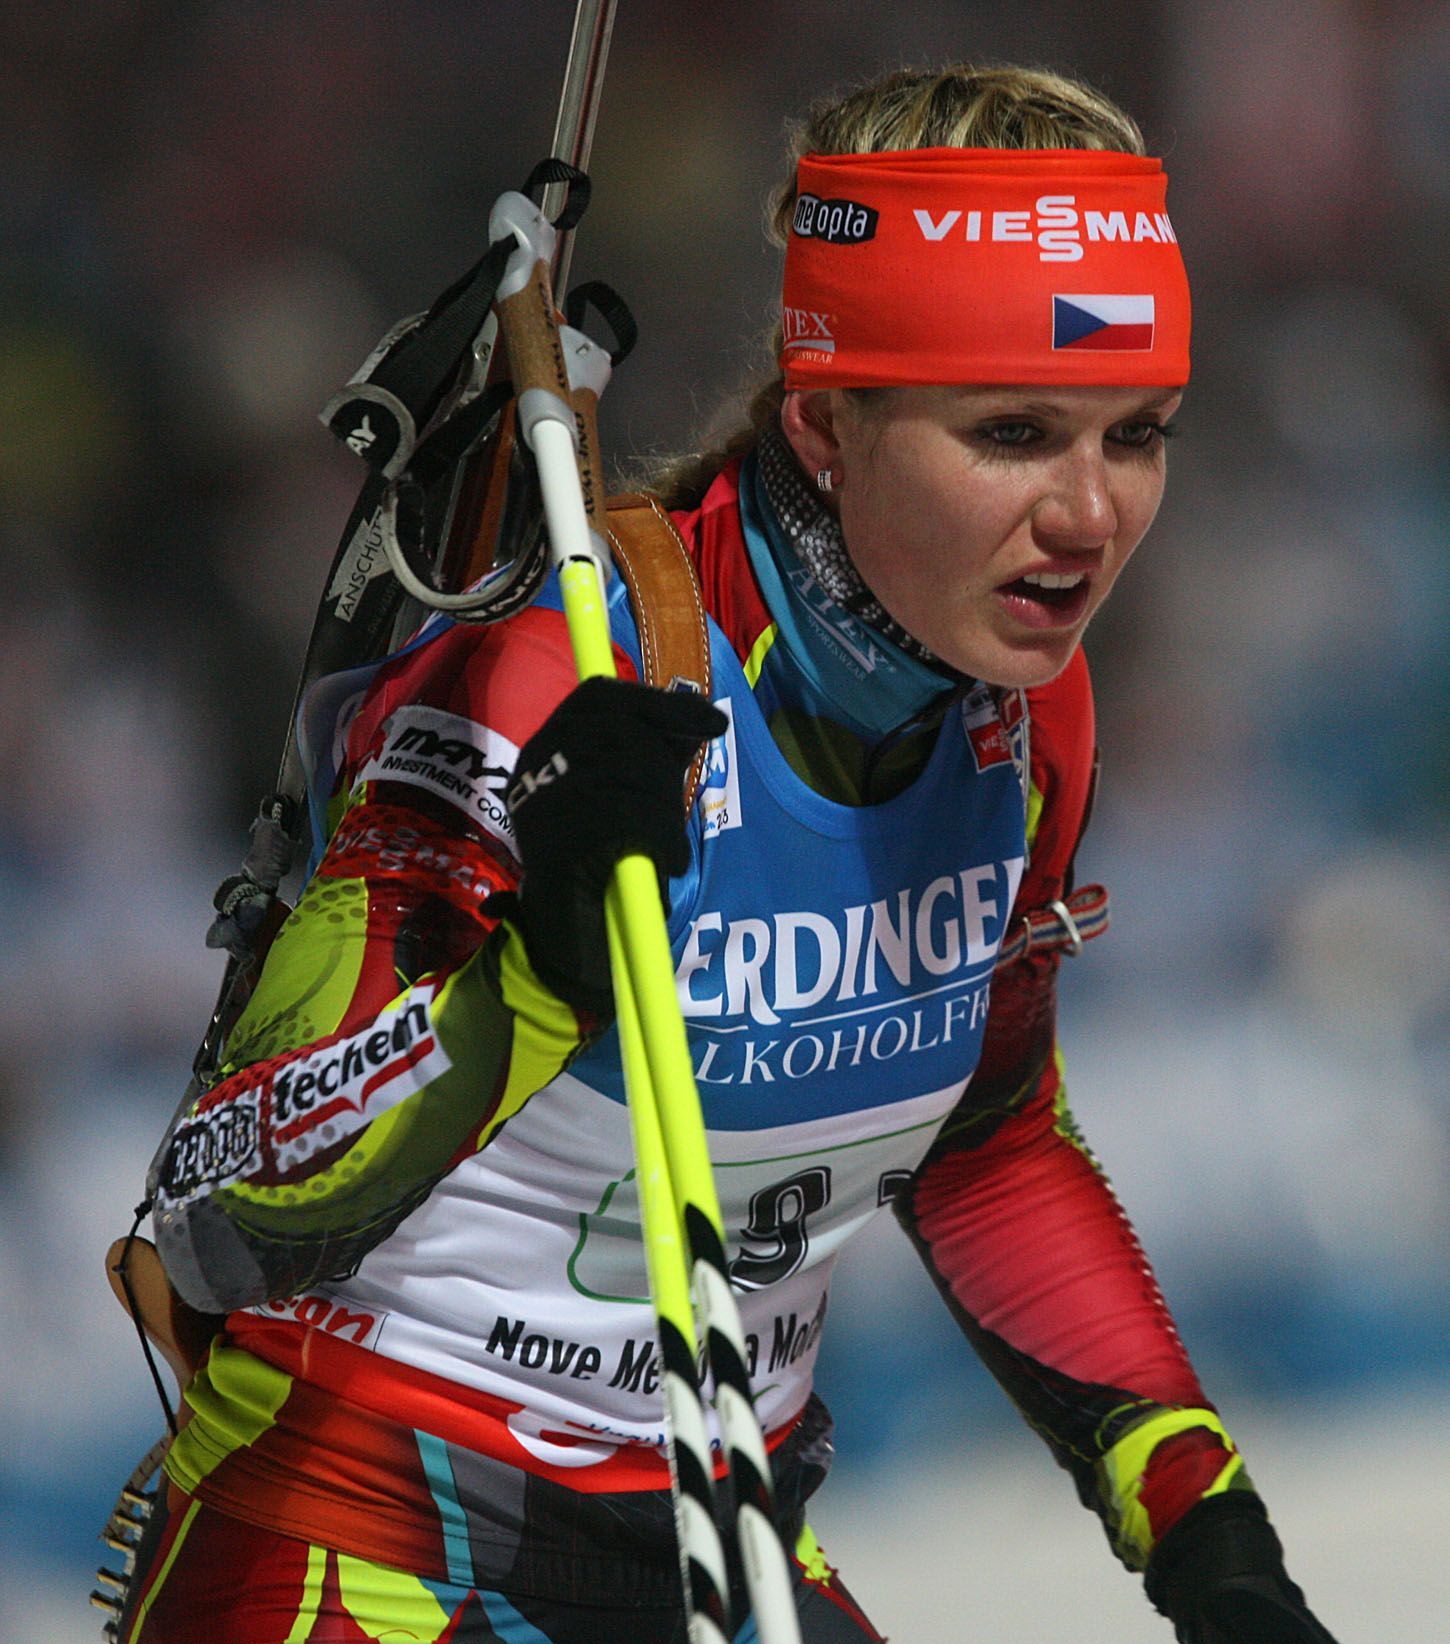 MS v biatlonu 2012, štafeta žen: Gabriela Soukalová